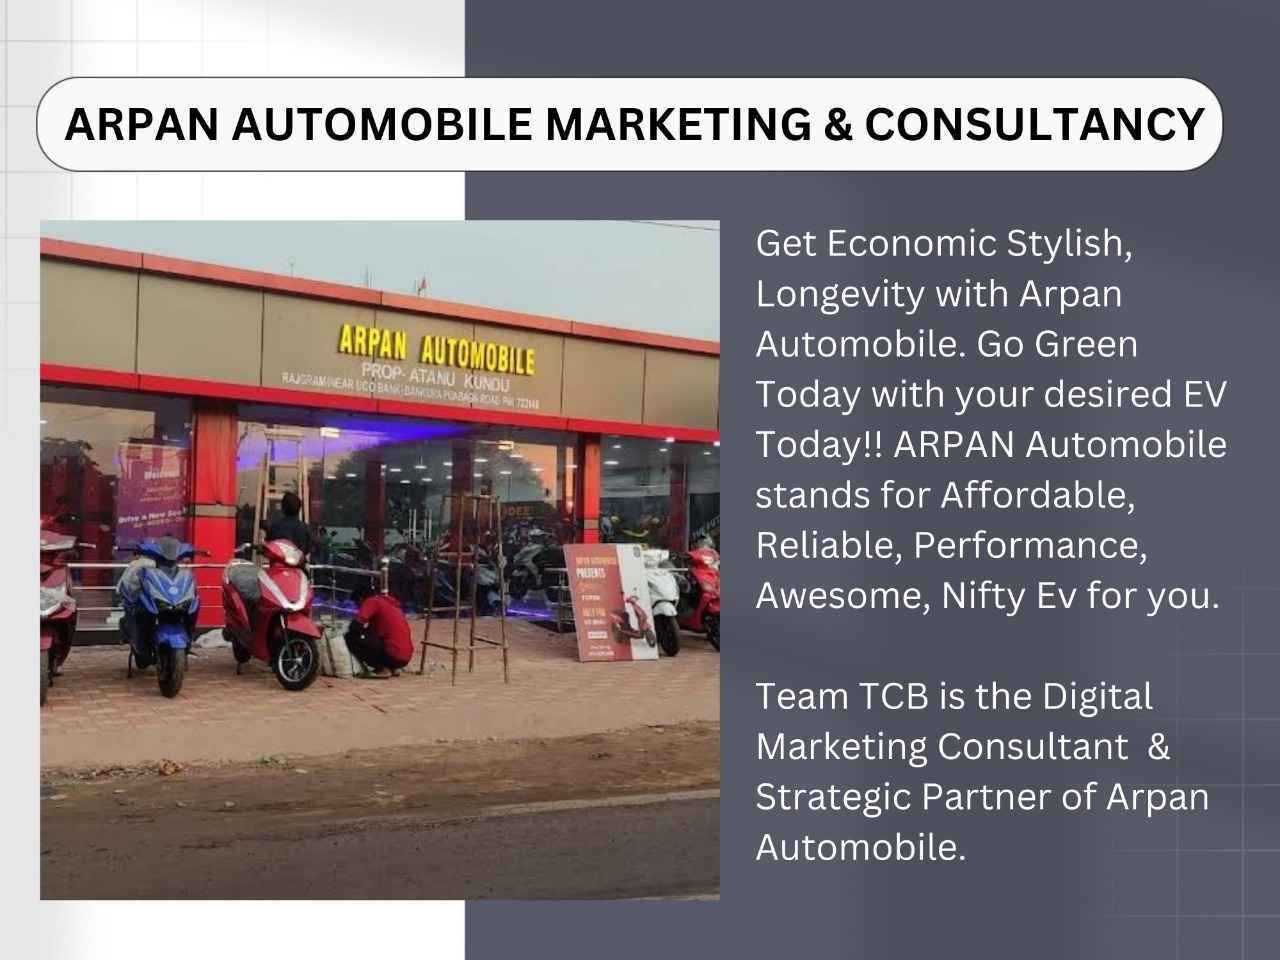 Arpan Automobile Marketing & Consultancy